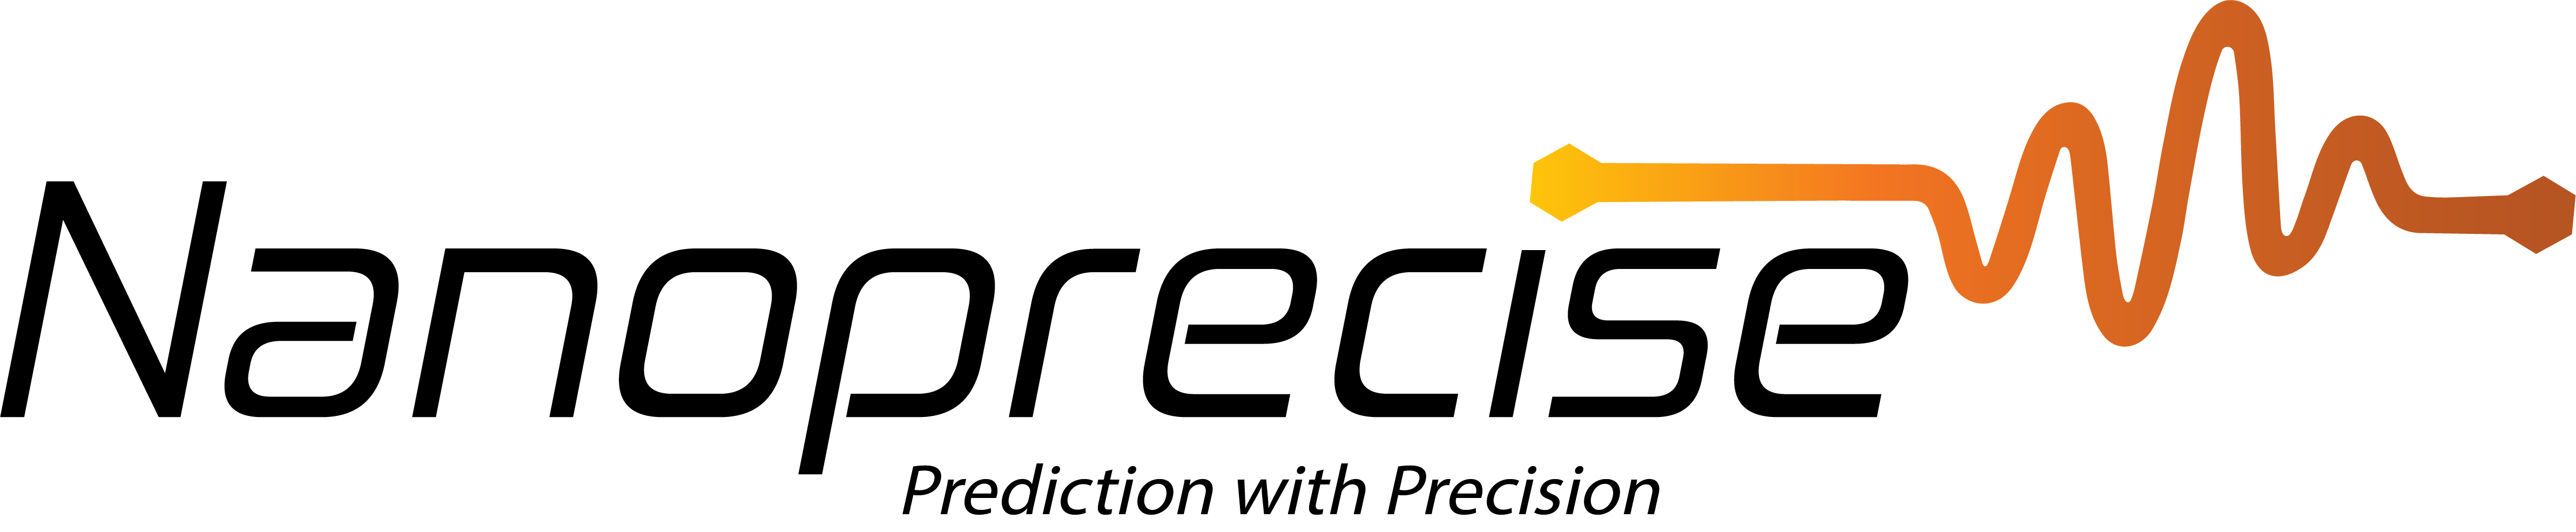 Nanoprecise - Original Logo Transparent-1